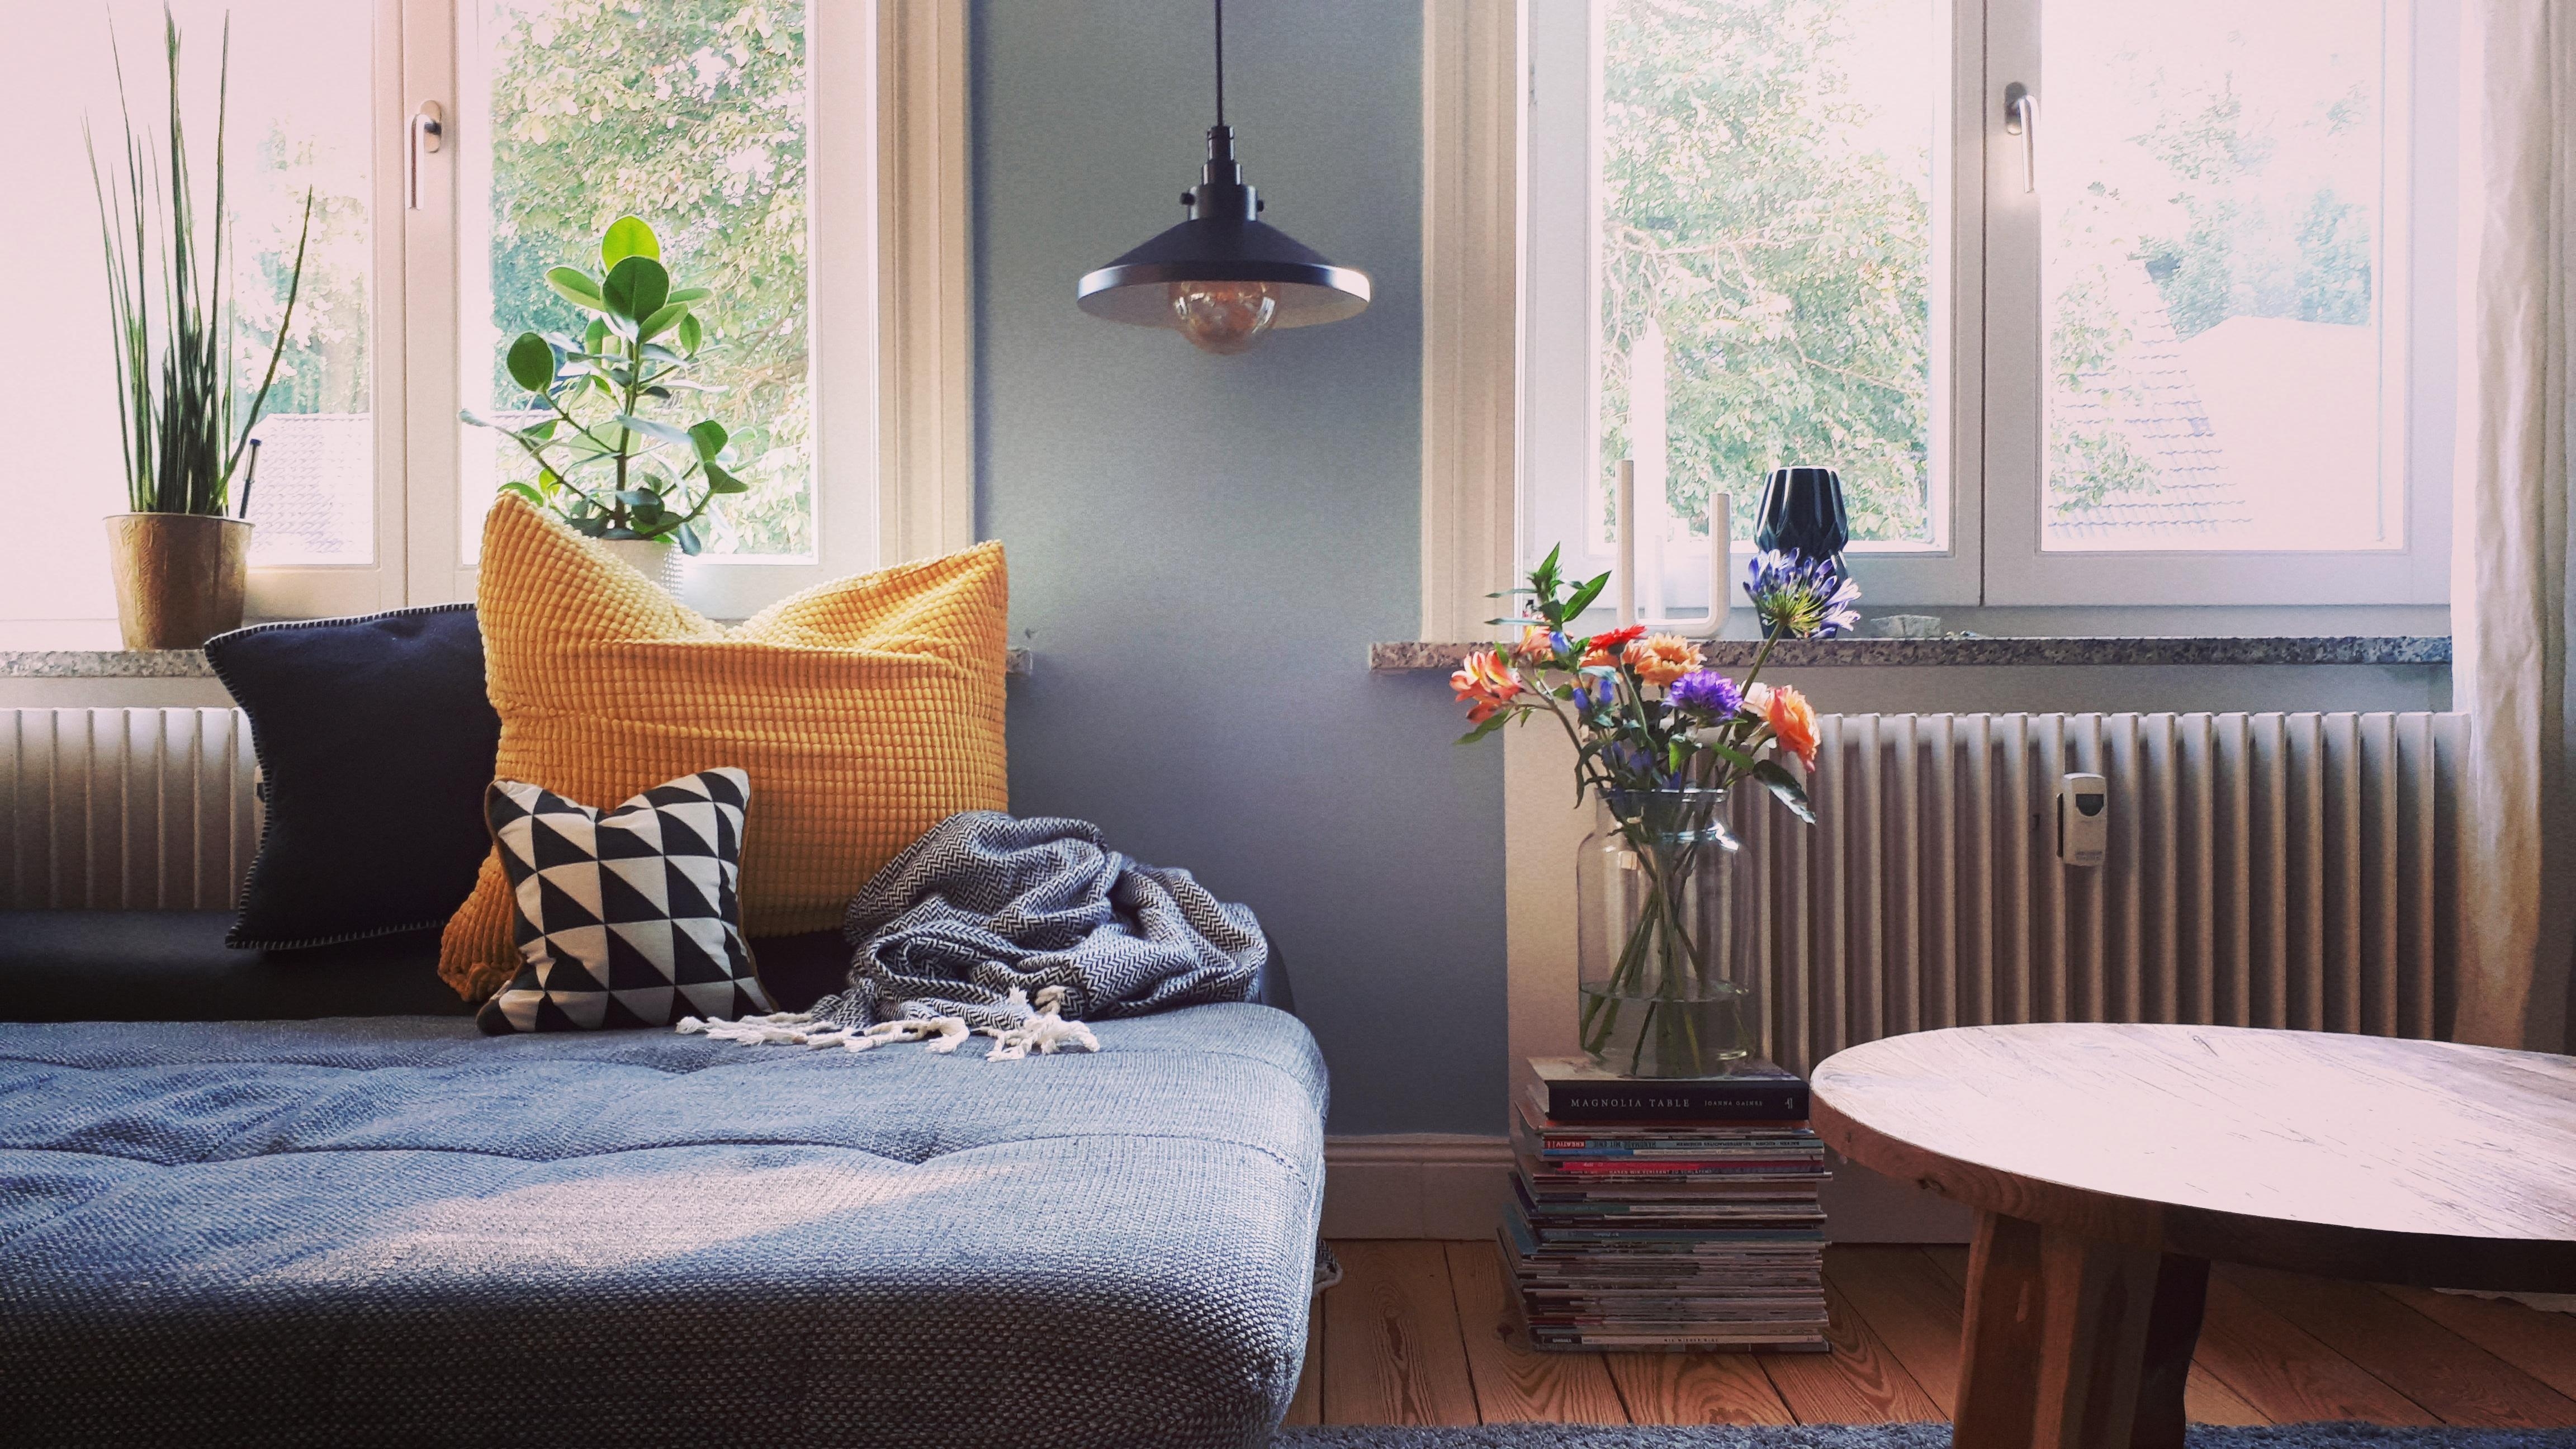 Neue Lampe im Wohnzimmer 💕
#Wohnzimmer #Lampe #Altbau #Altbauliebe #Couch #blaue Wand #Fenster #Hamburg #Blumen #Pflanz